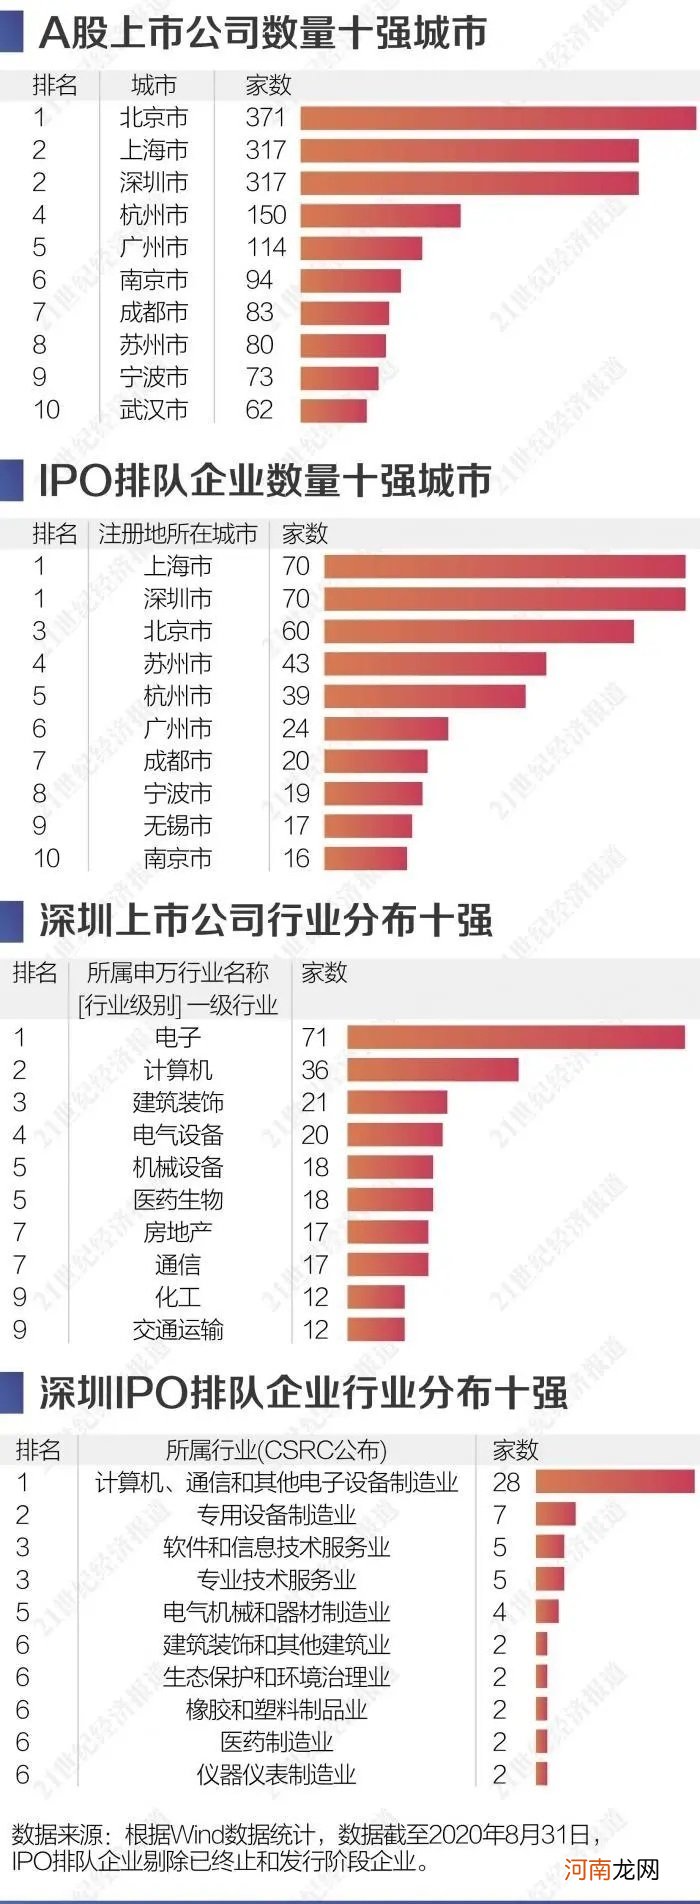 深圳资本活力图谱：上市公司90%是民企 拟IPO数并列第一 偏爱创业板